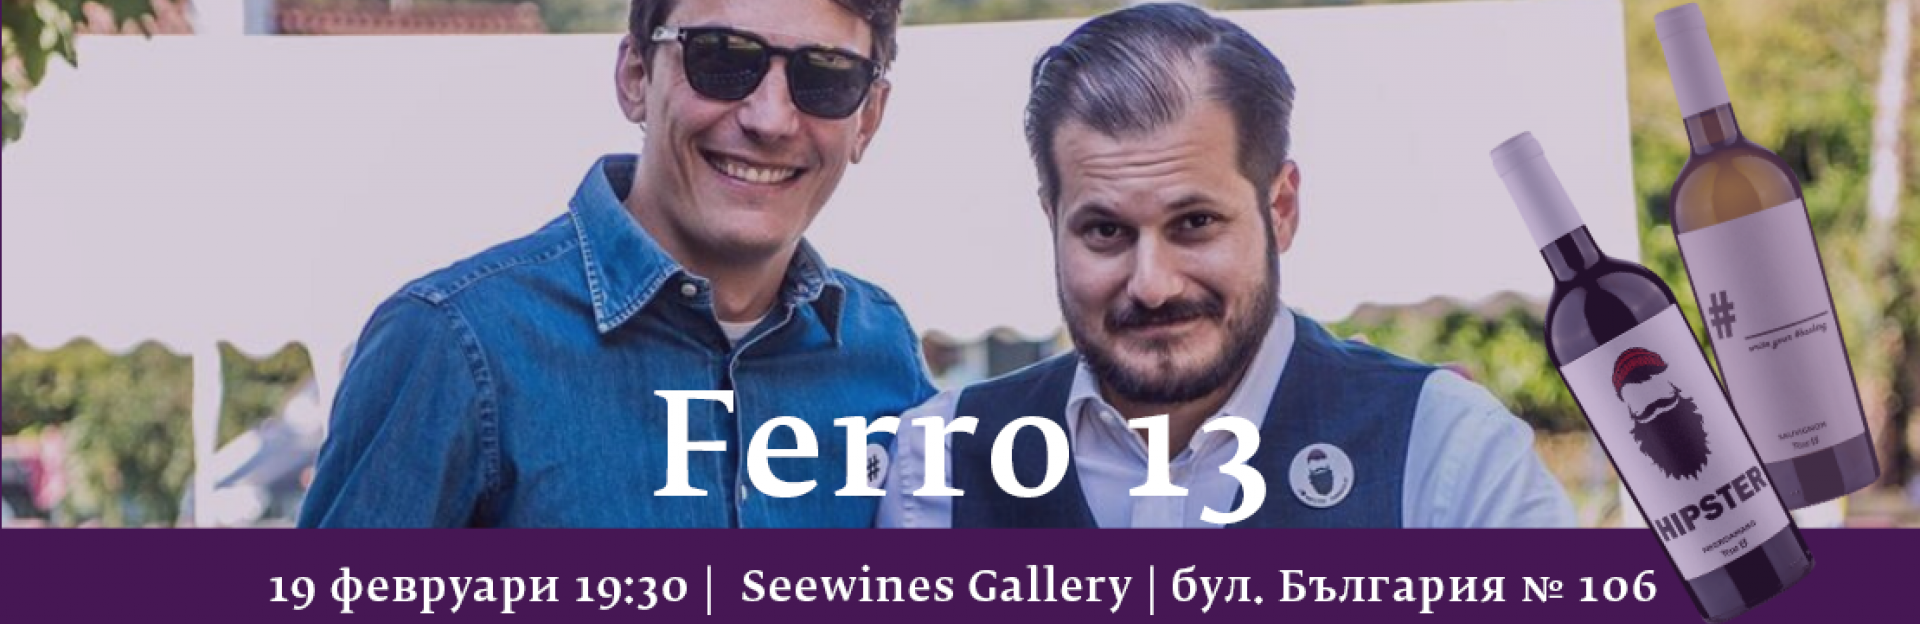 Специални гости от Ferro 13 